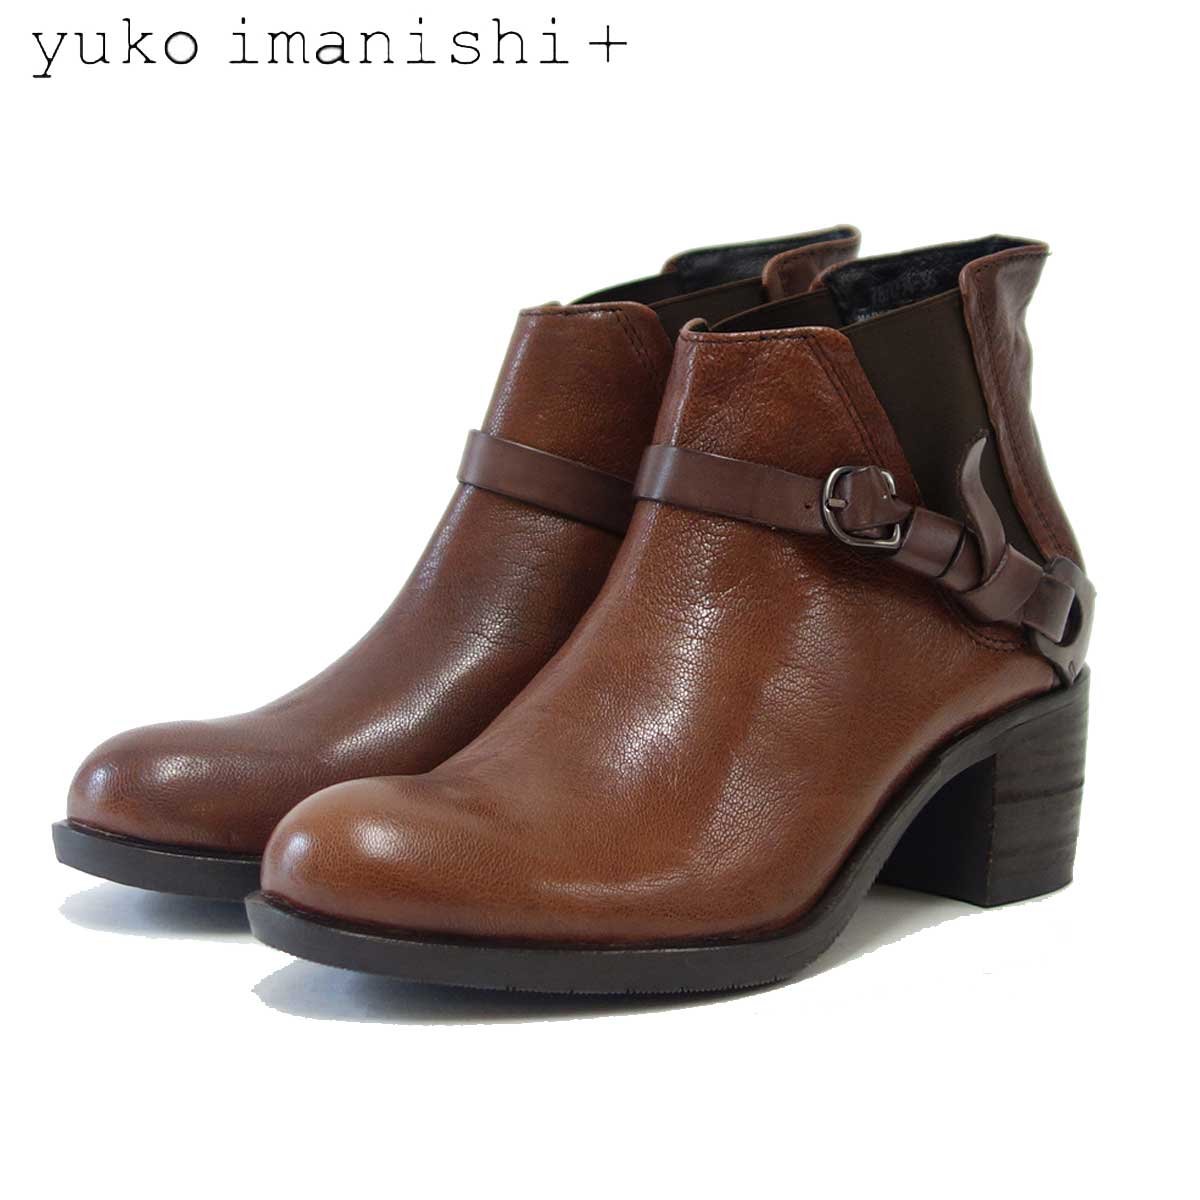 ユーコイマニシ 超人気 専門店 新着 yuko imanishi 787004 ブラウン 靴 上質天然皮革のサイドゴアブーツ